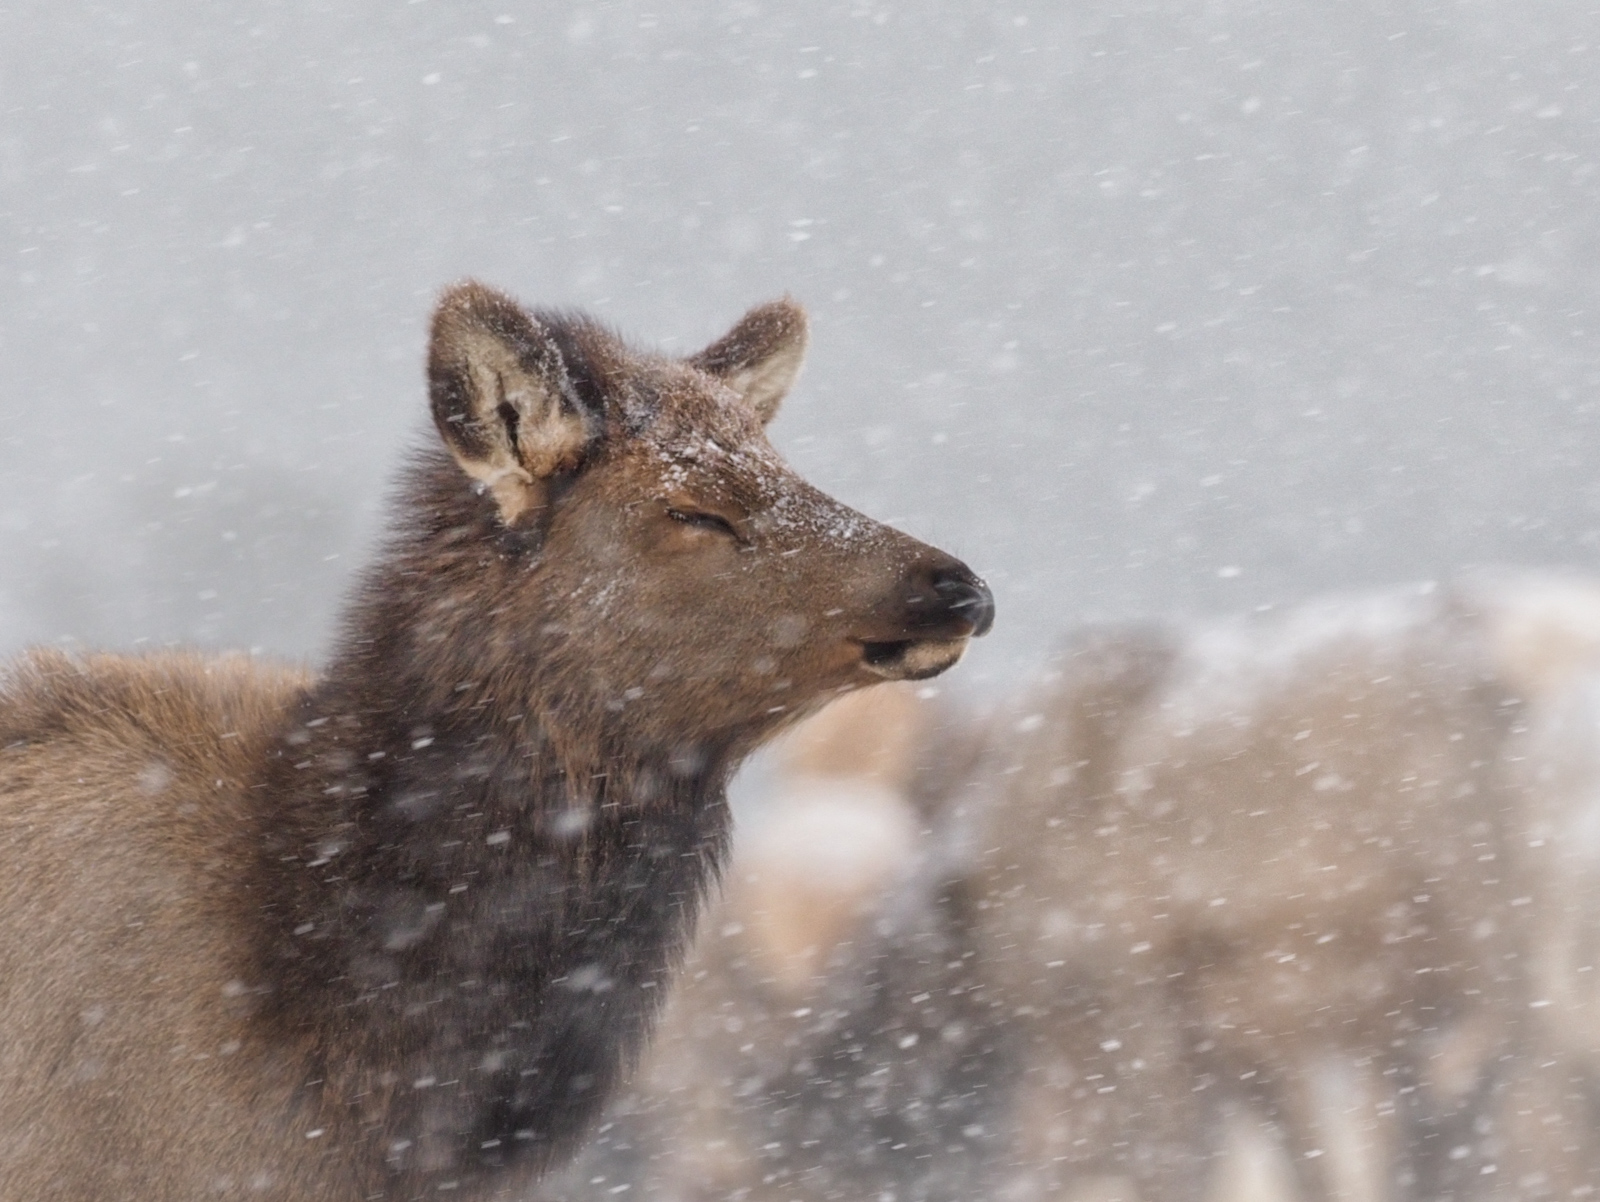 Elk Cow in Snow Storm